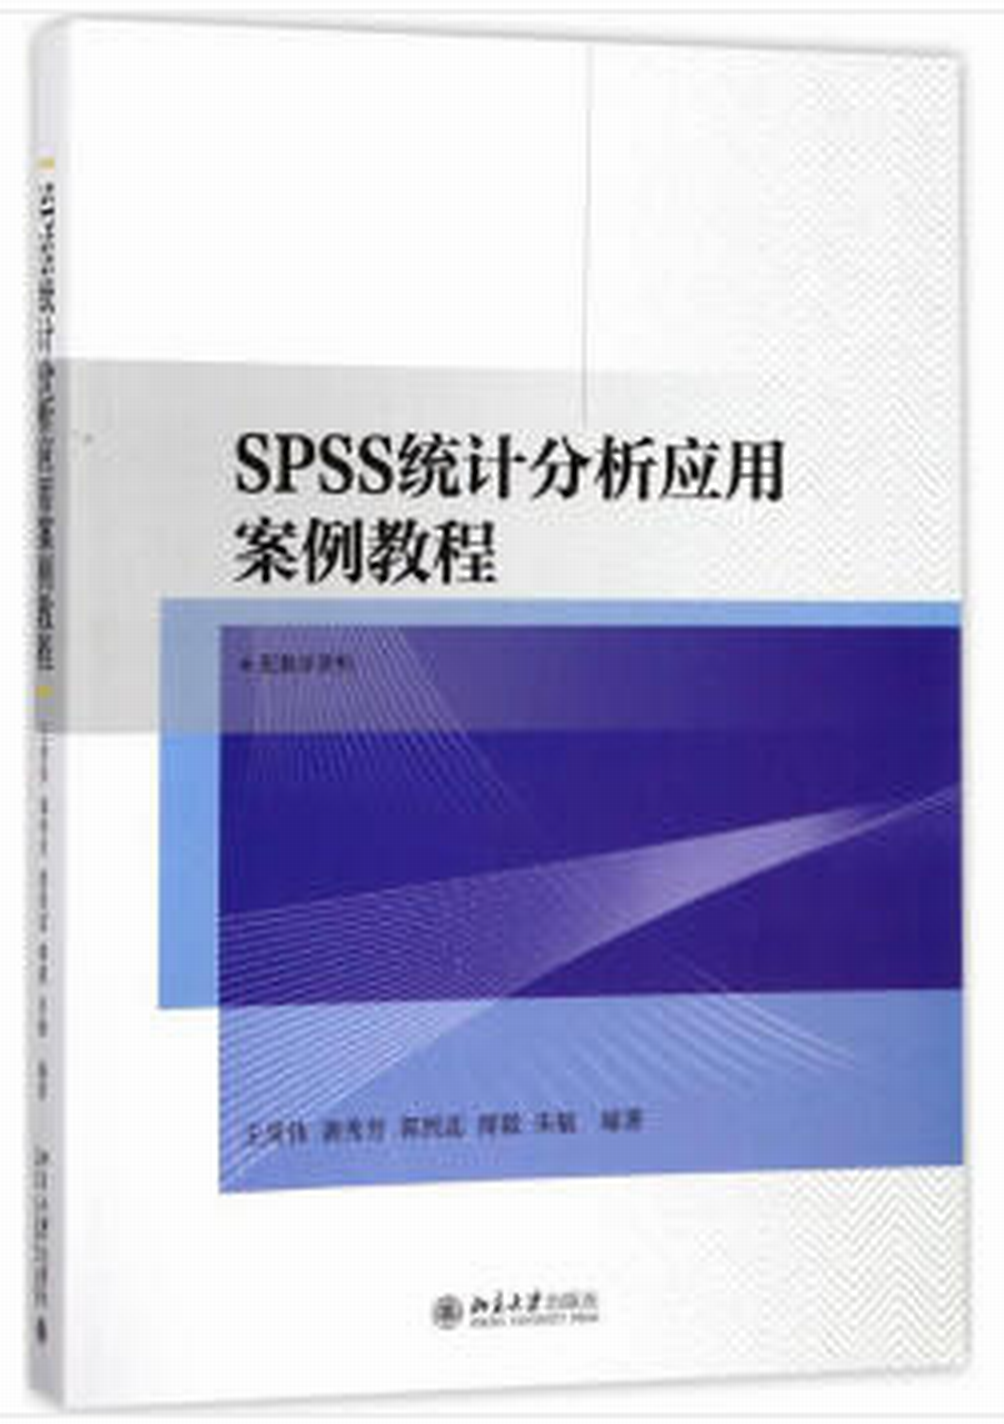 SPSS統計分析套用案例教程